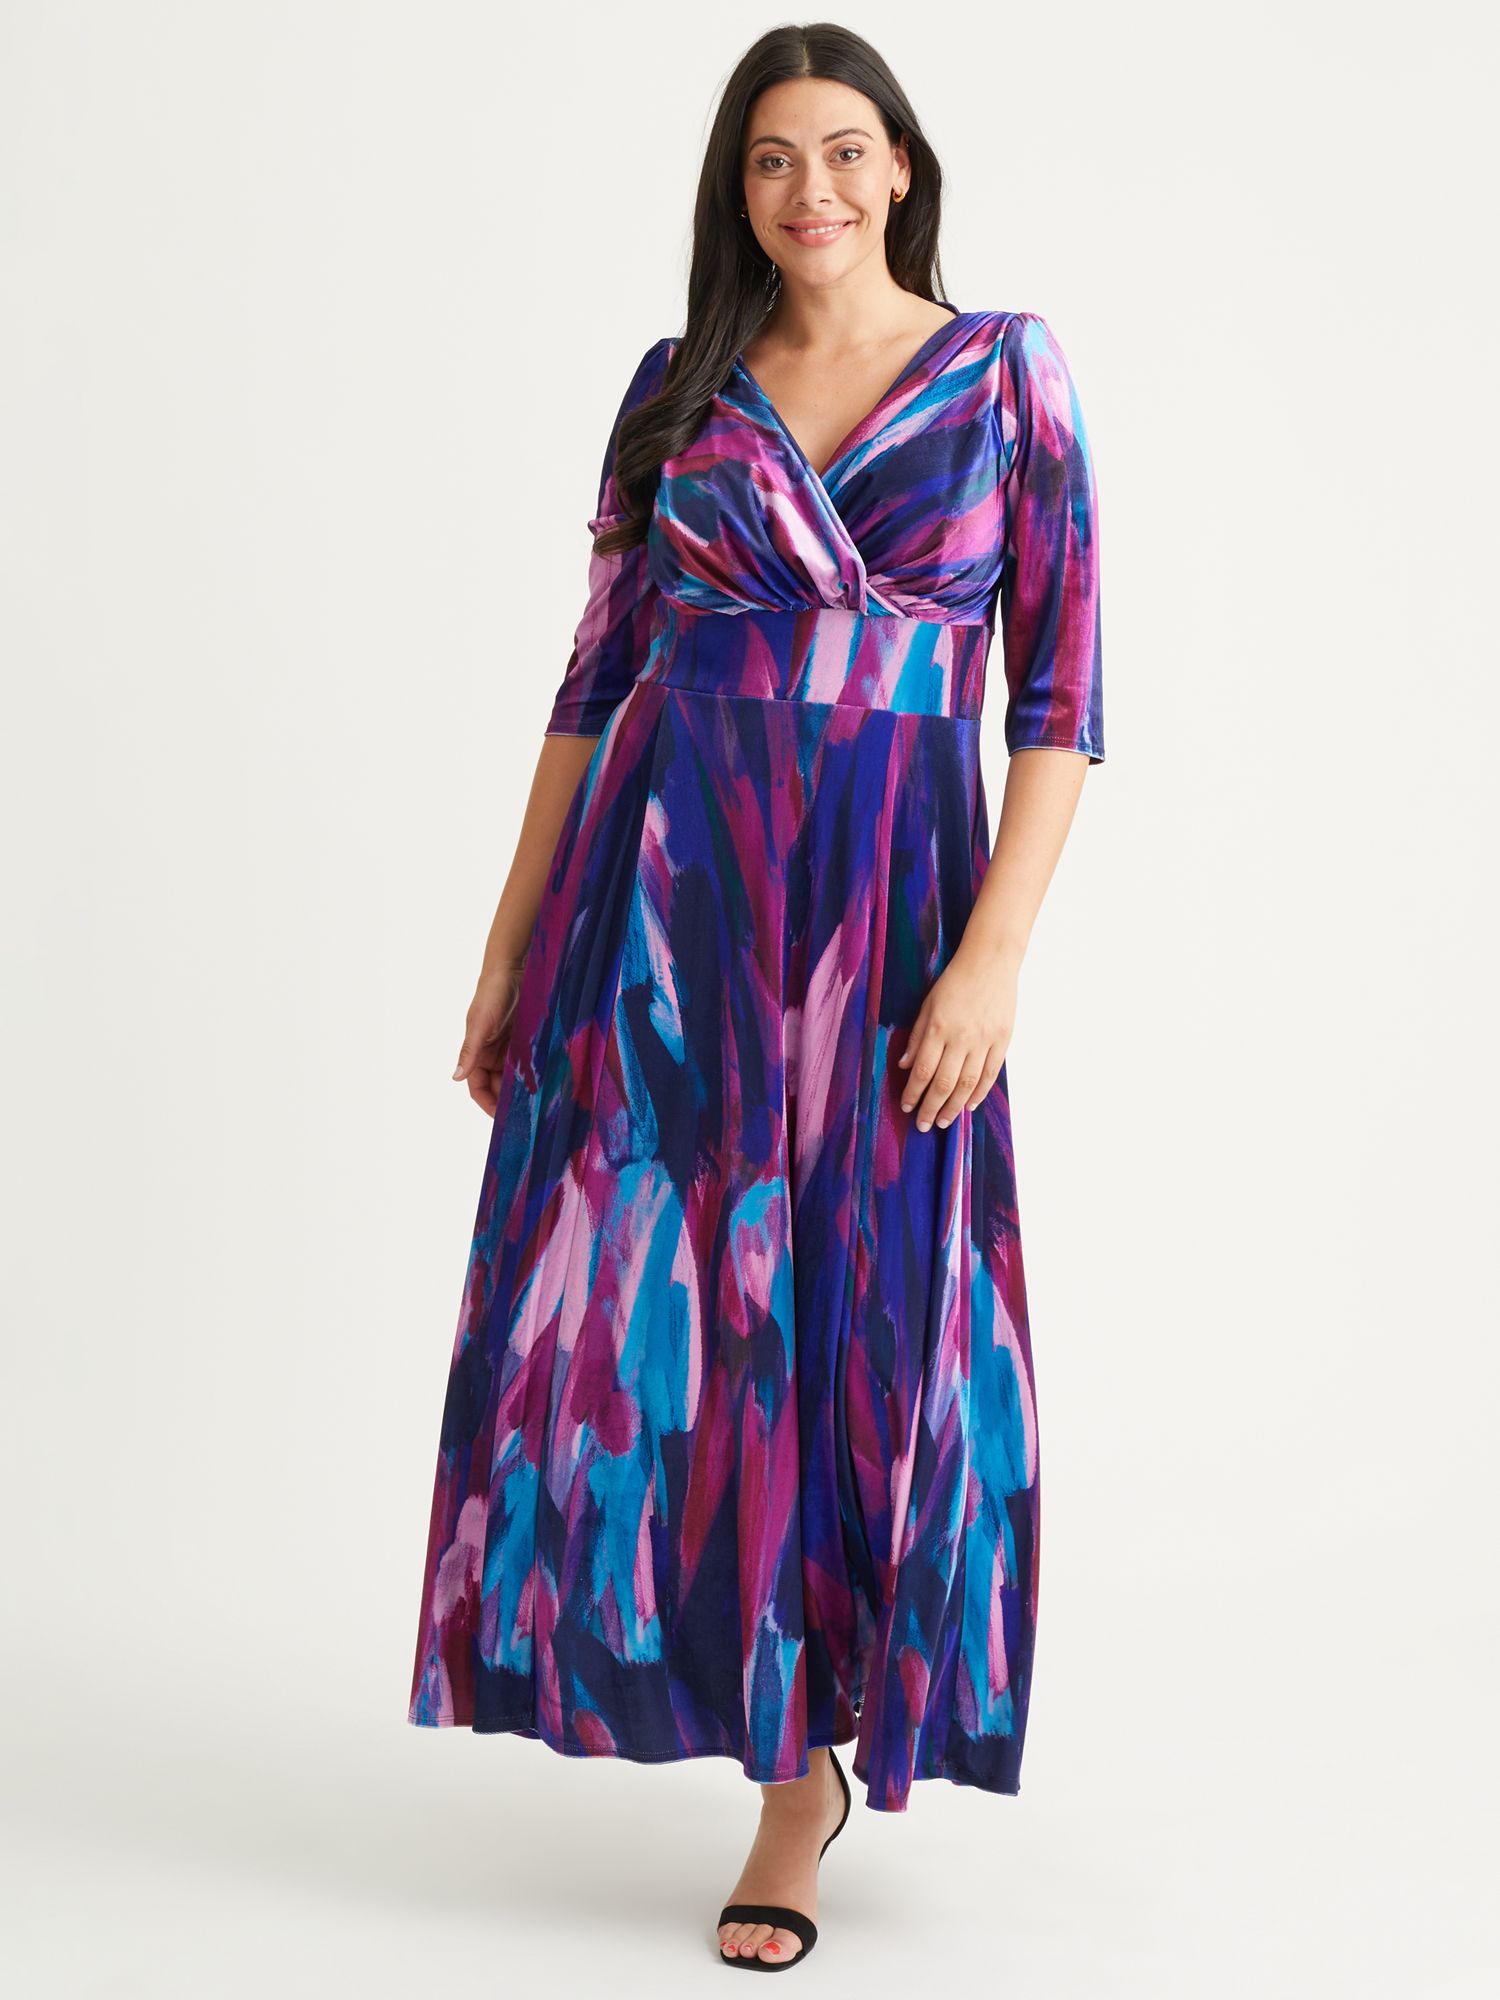 Бархатное платье макси Verity с абстрактным принтом Scarlett & Jo, индиго/пурпурный цена и фото